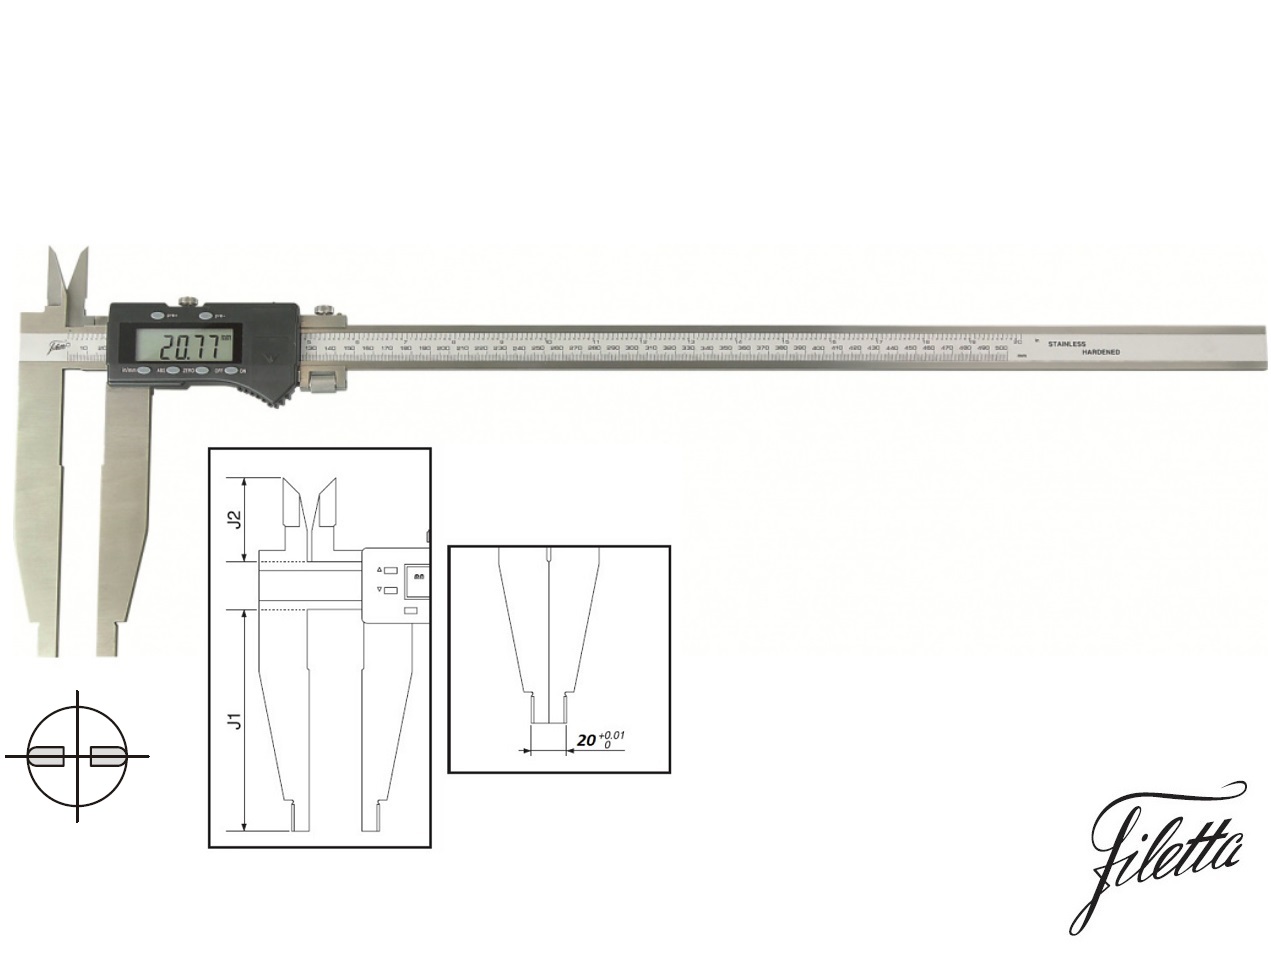 Digitální posuvné měřítko Filetta 0-2000/200 mm s měřicími nožíky pro vnitřní měření